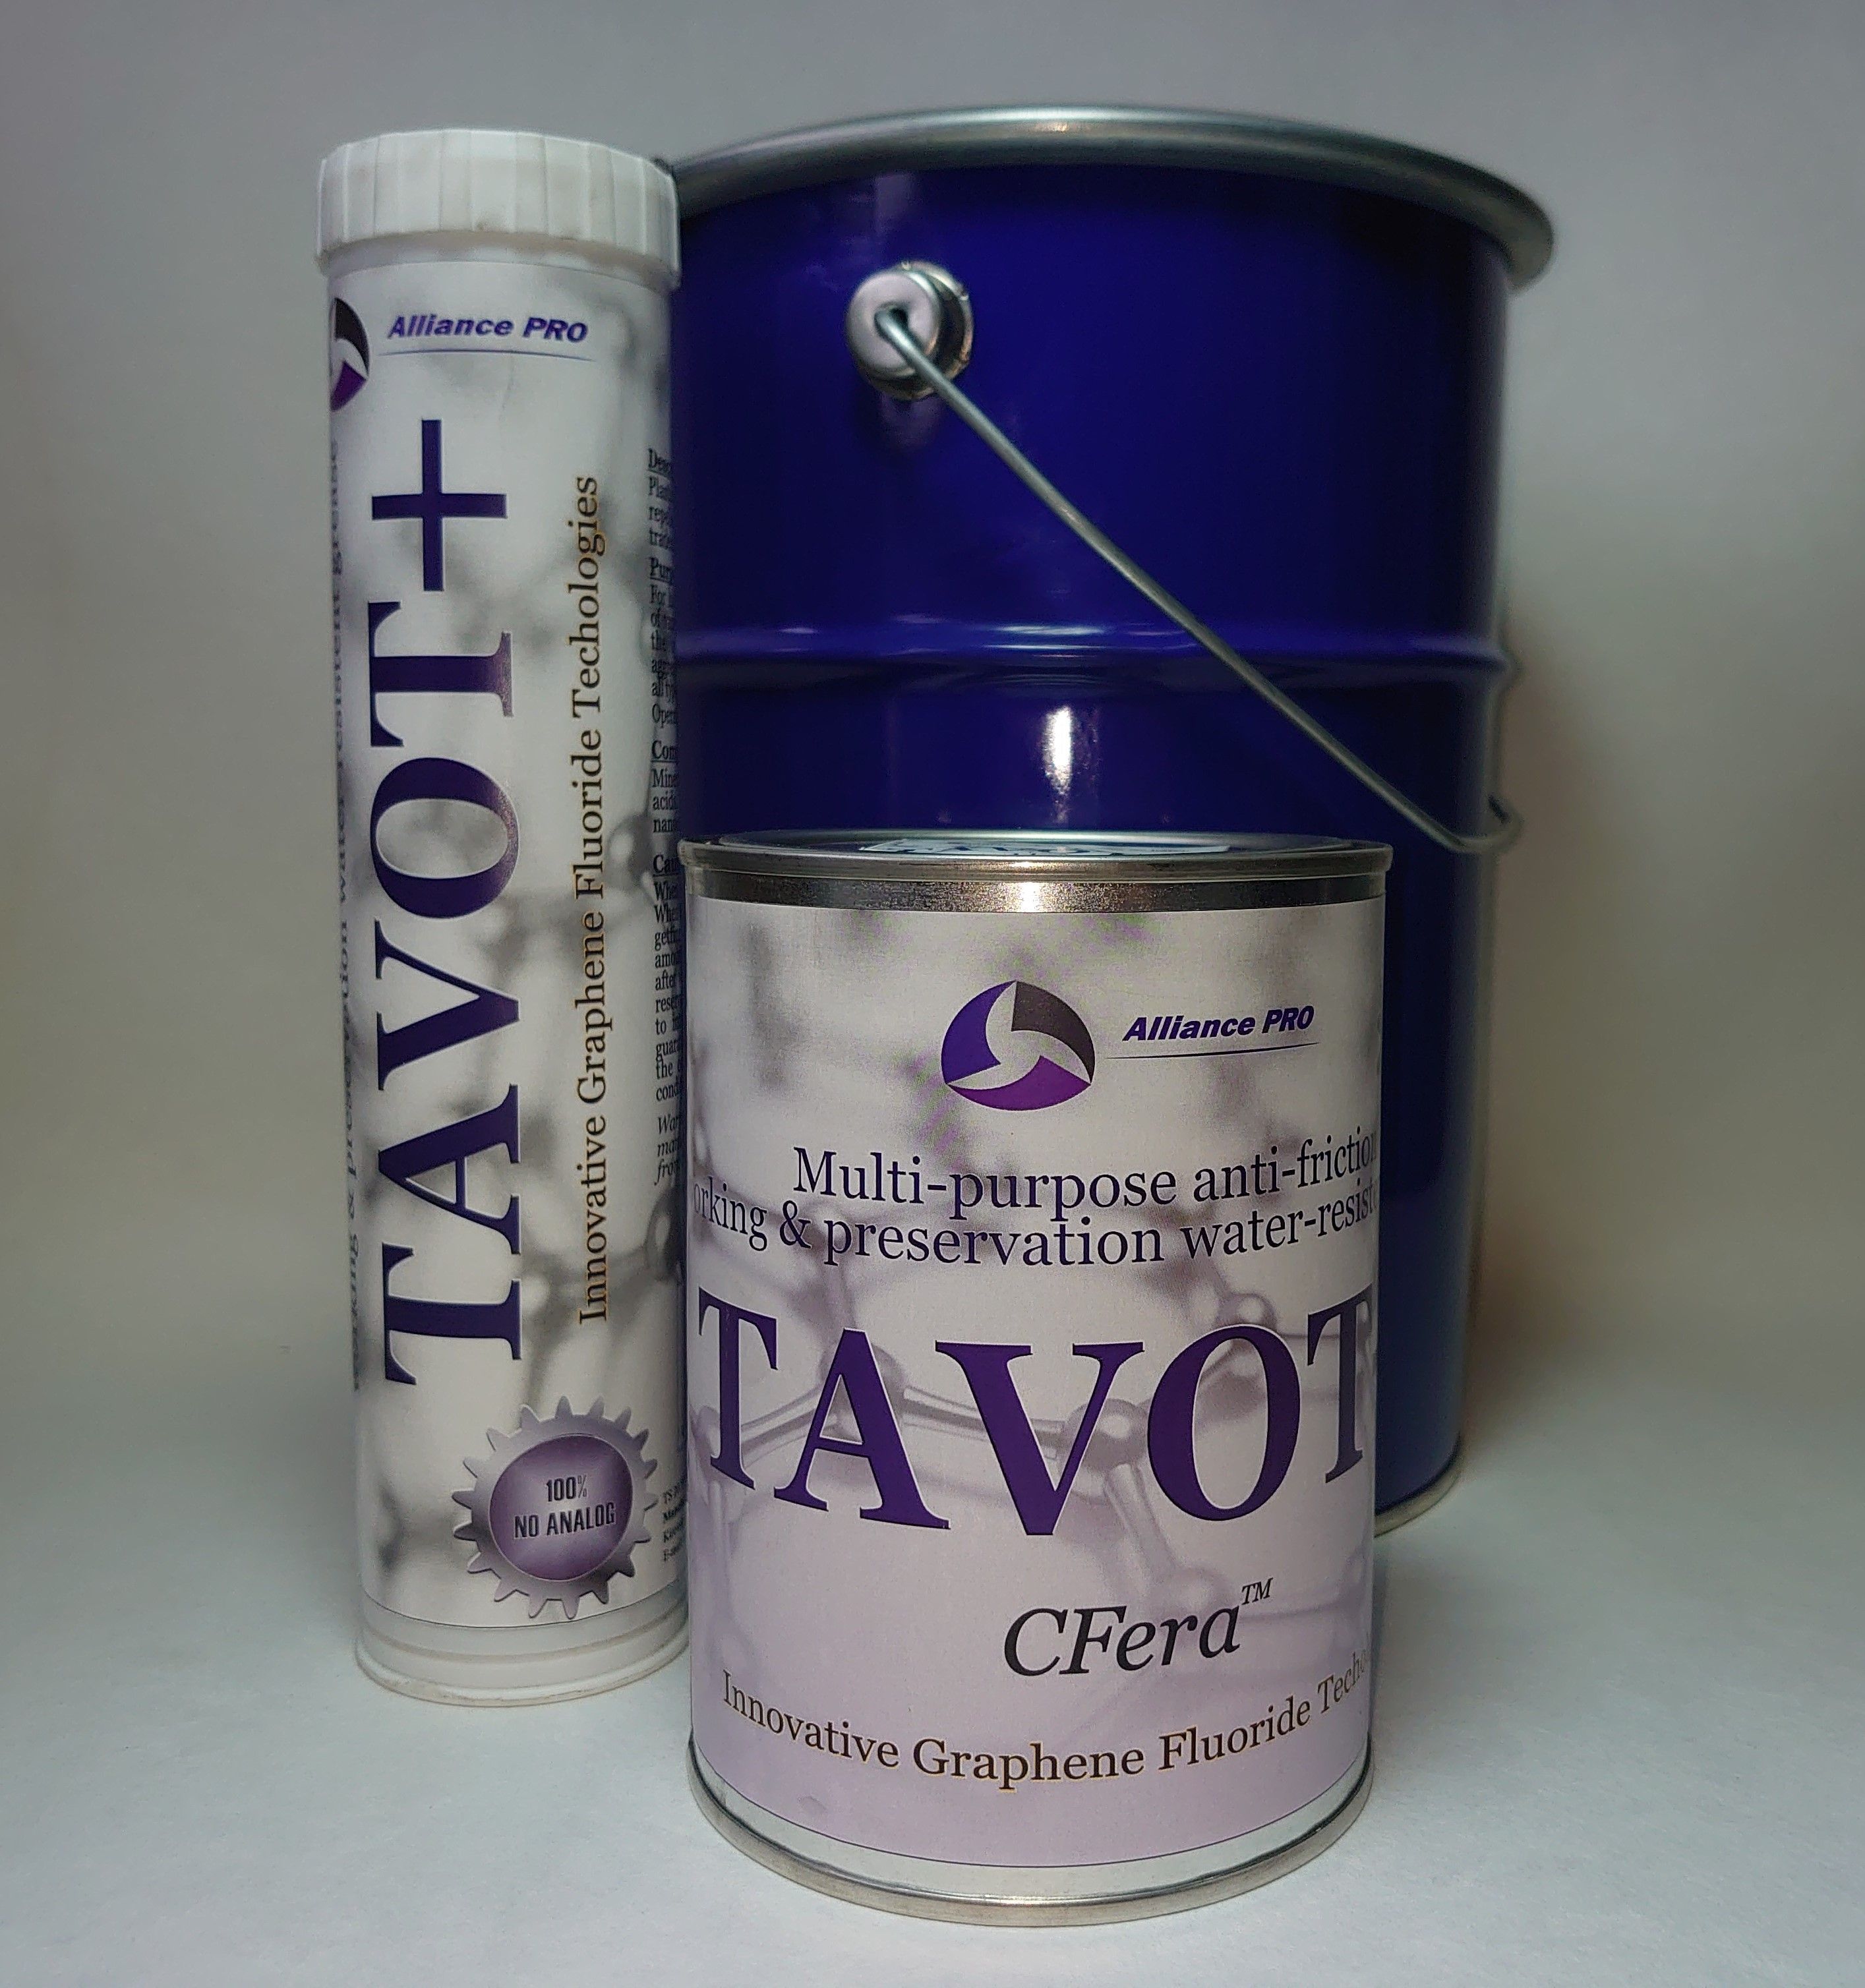 Троссовая графеновая смазка TAVOT+